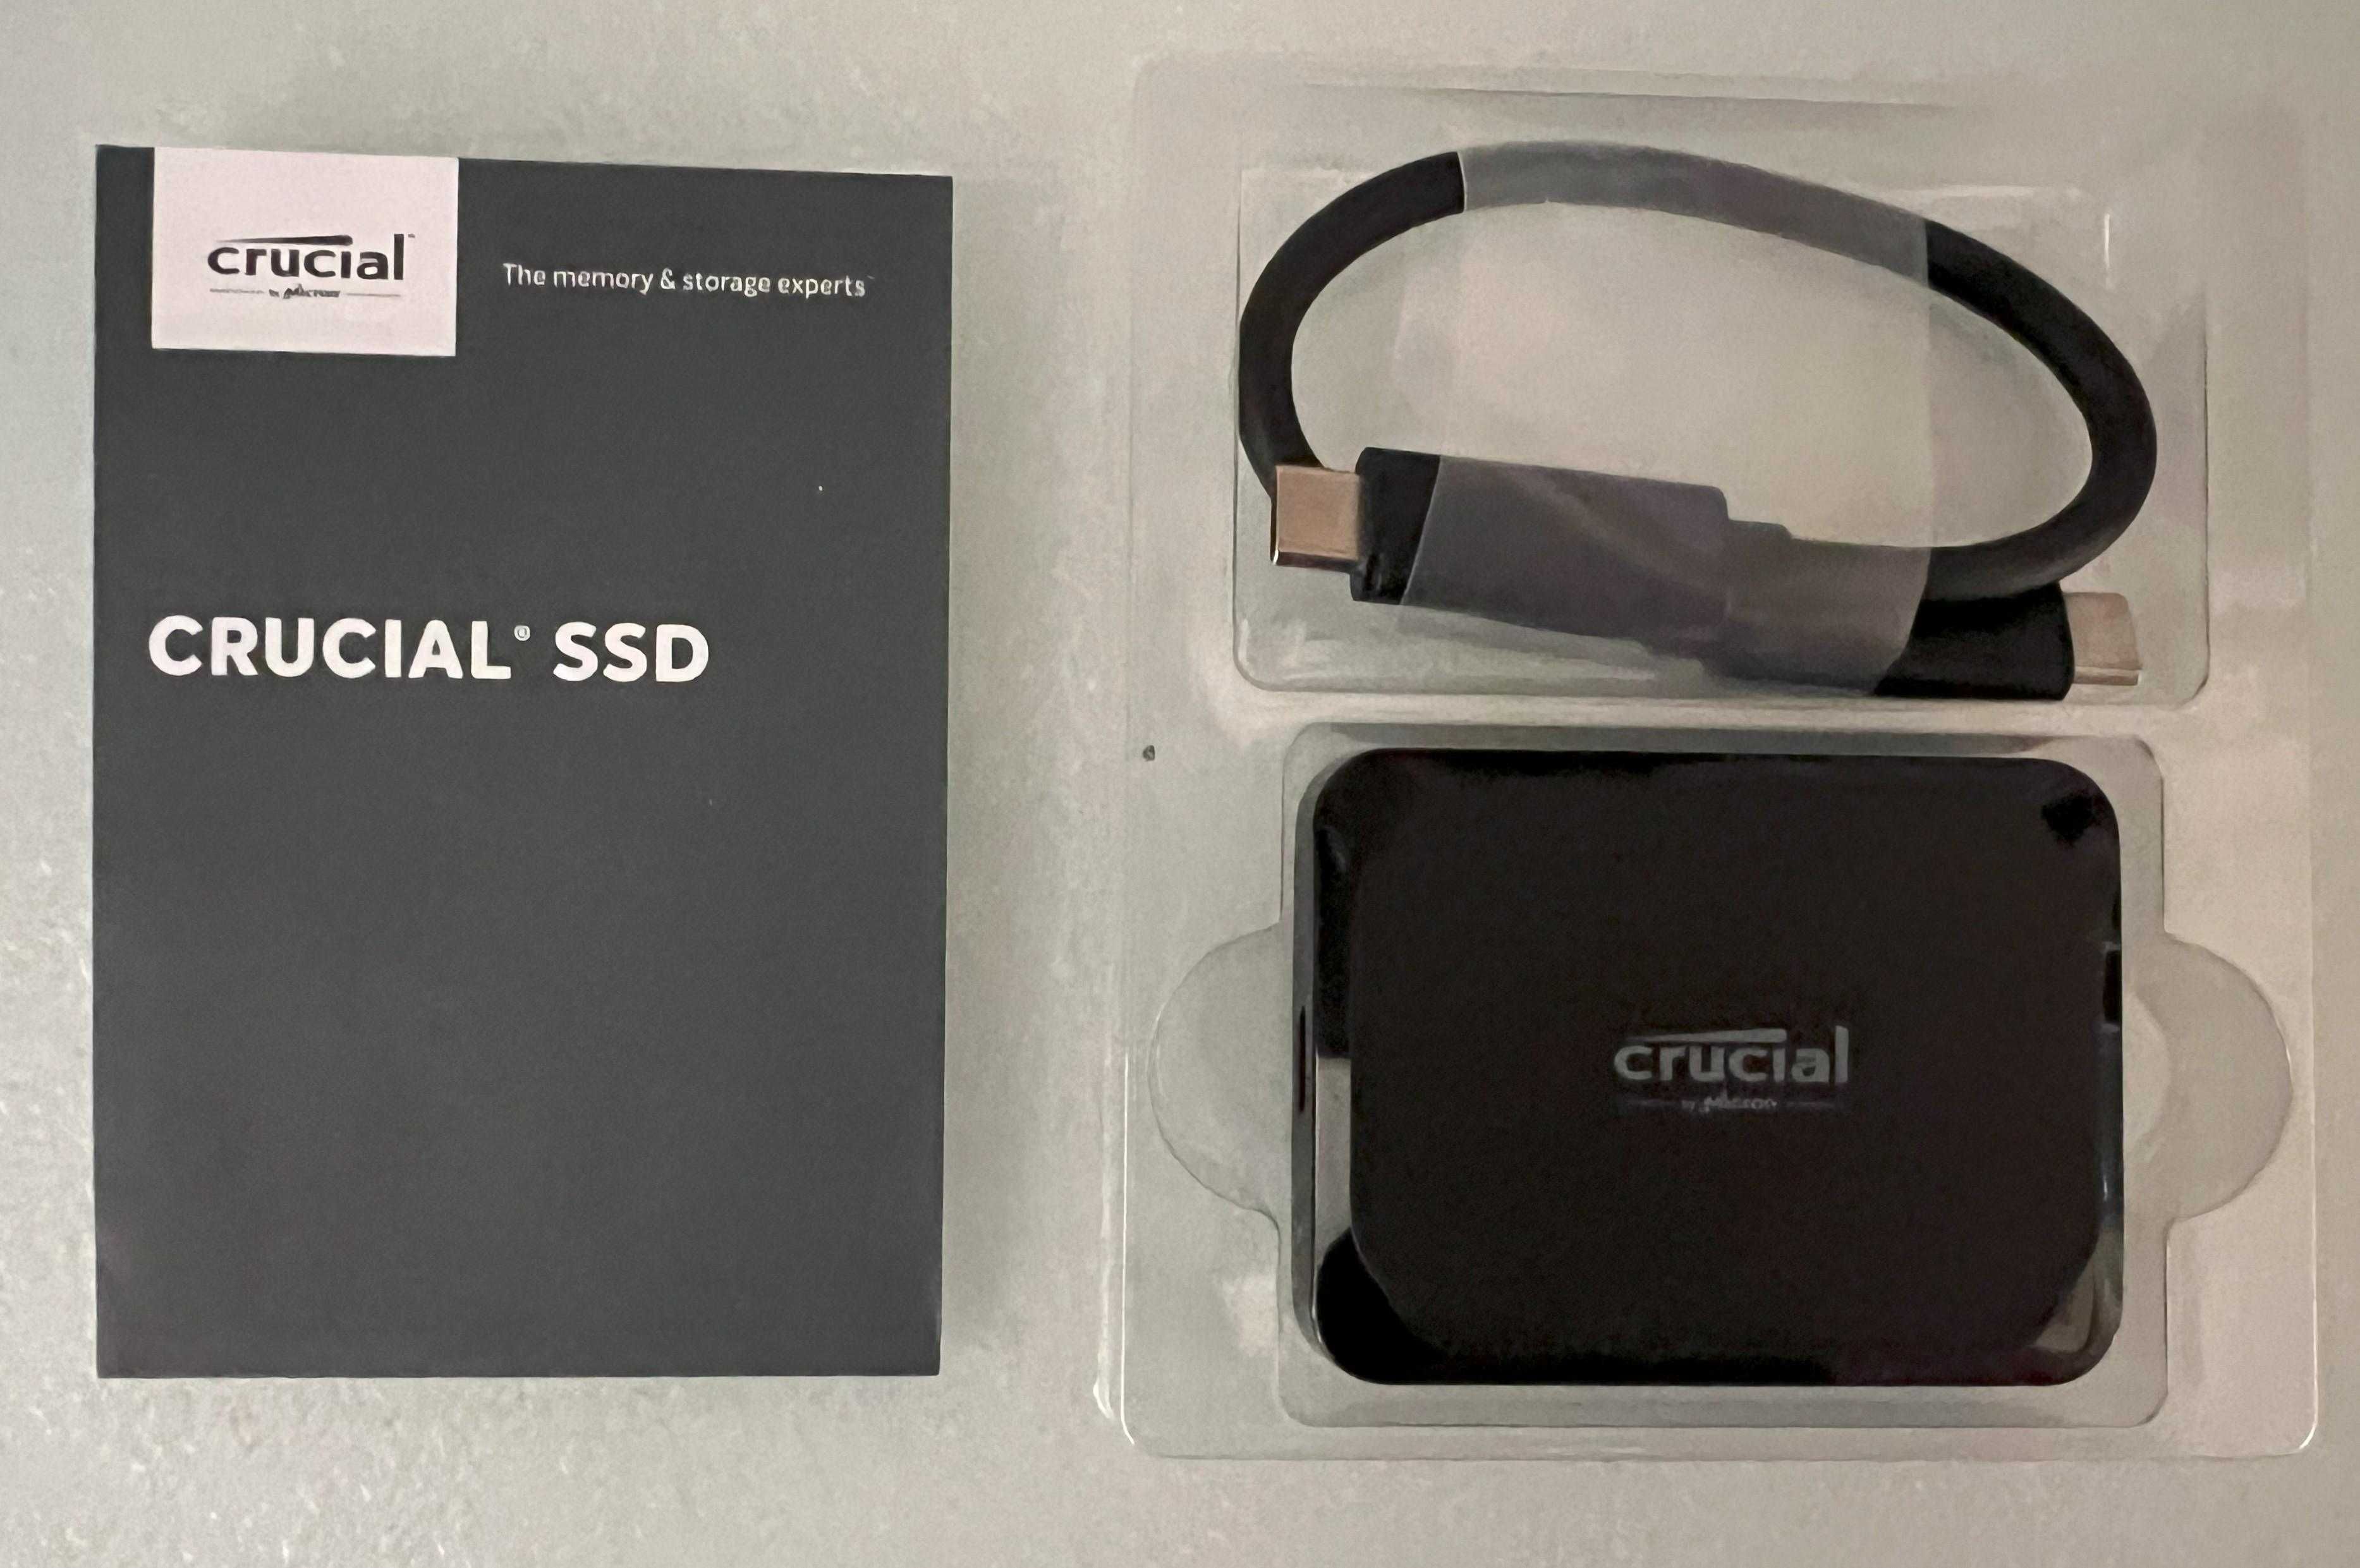 SSD Crucial X9 1TB USB-C 3.2 1050 MB/s (1GB/s) SIGILAT Transp Gratuit